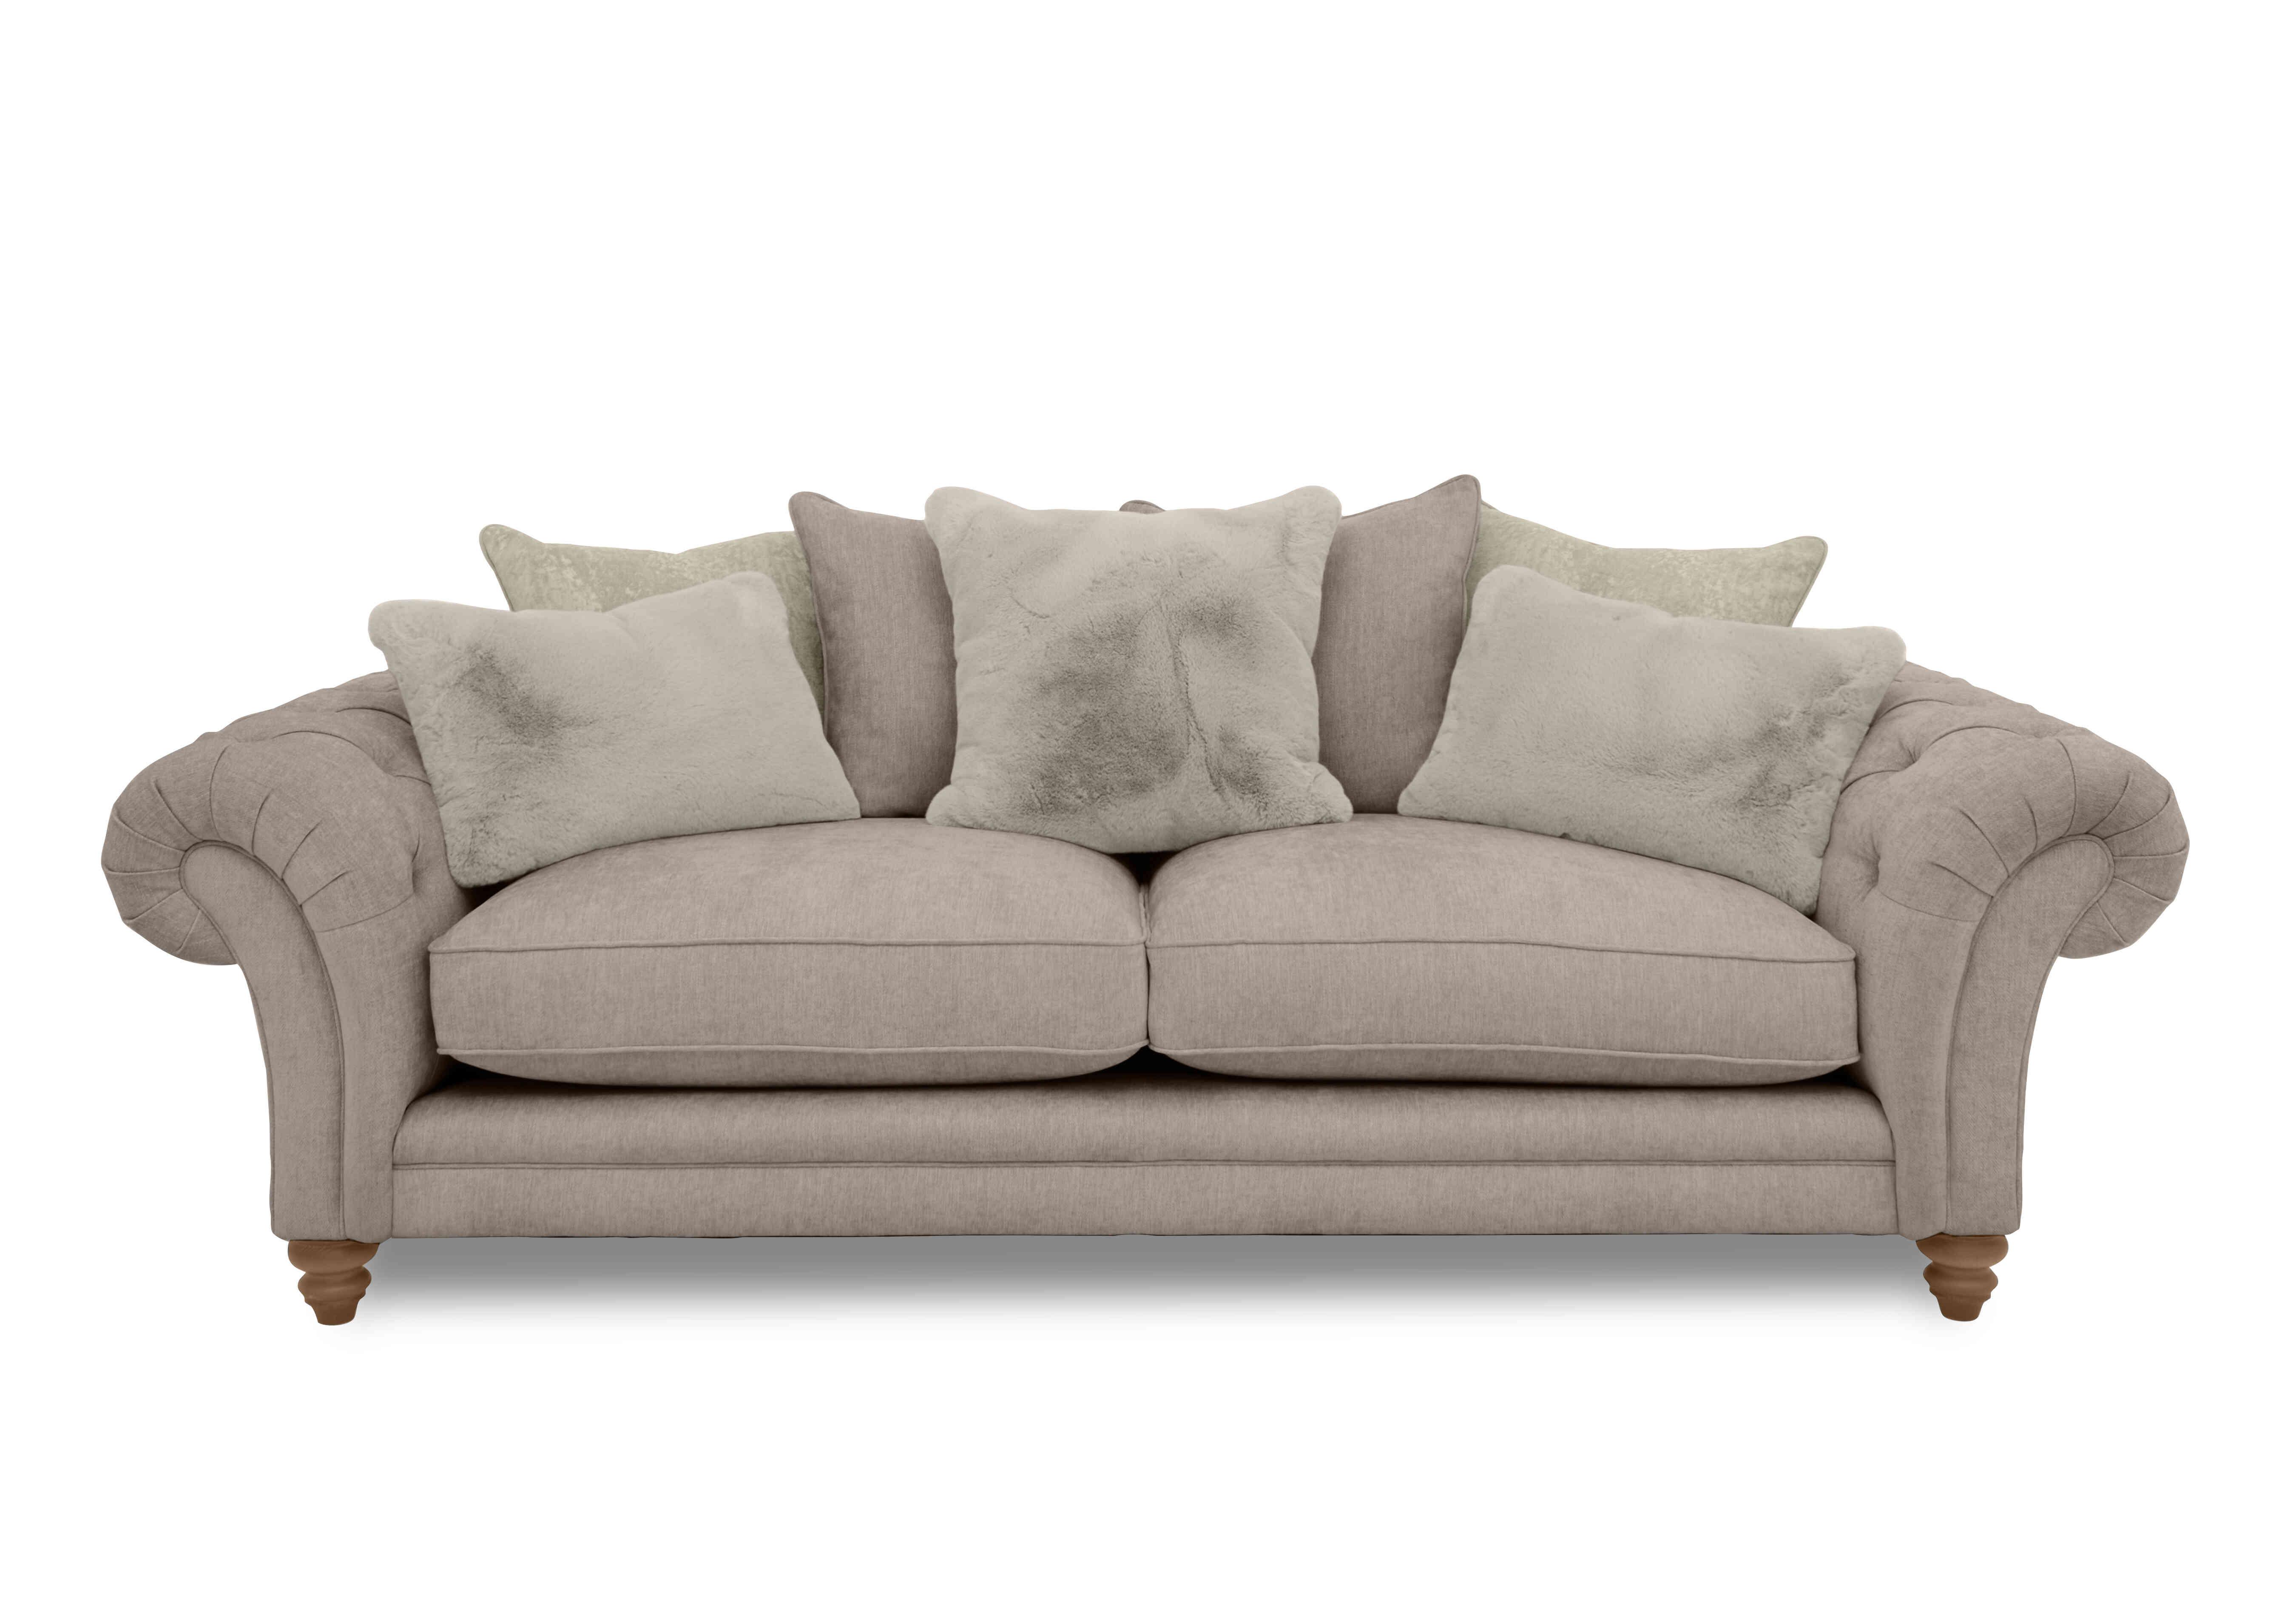 Blenheim 4 Seater Scatter Back Sofa in Darwin Mink Of on Furniture Village